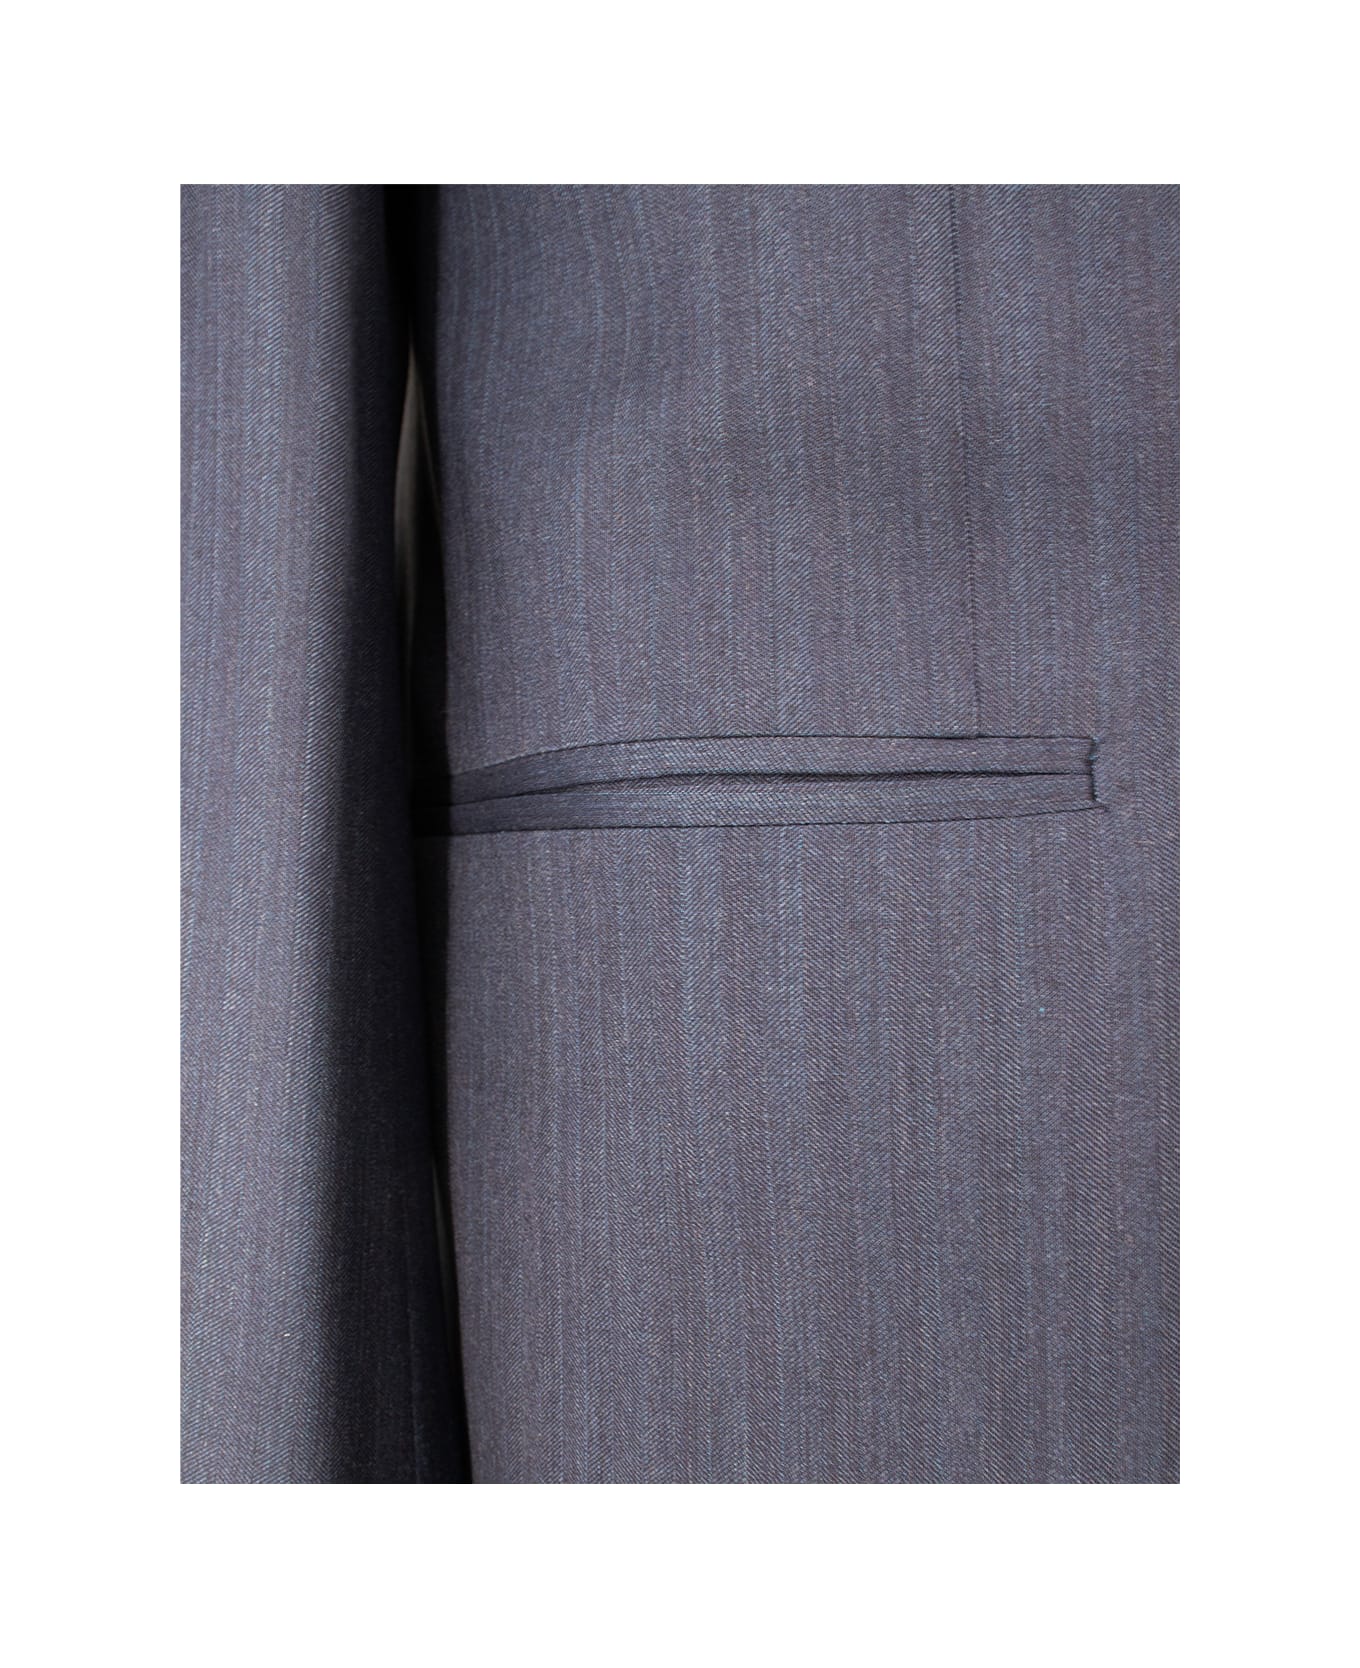 Kiton Suit - BLUE スーツ